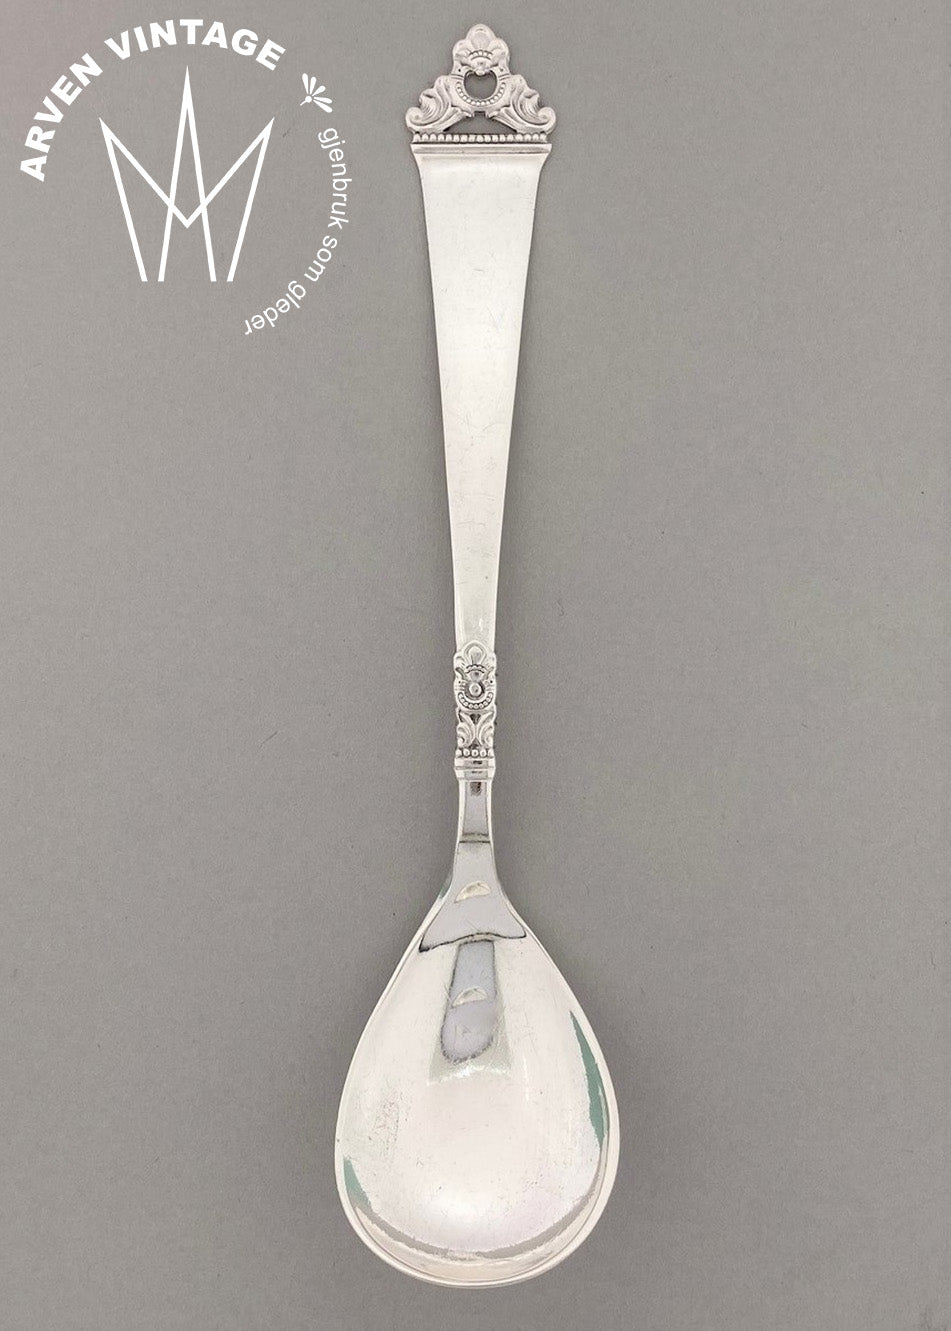 Vintage Odel jam spoon